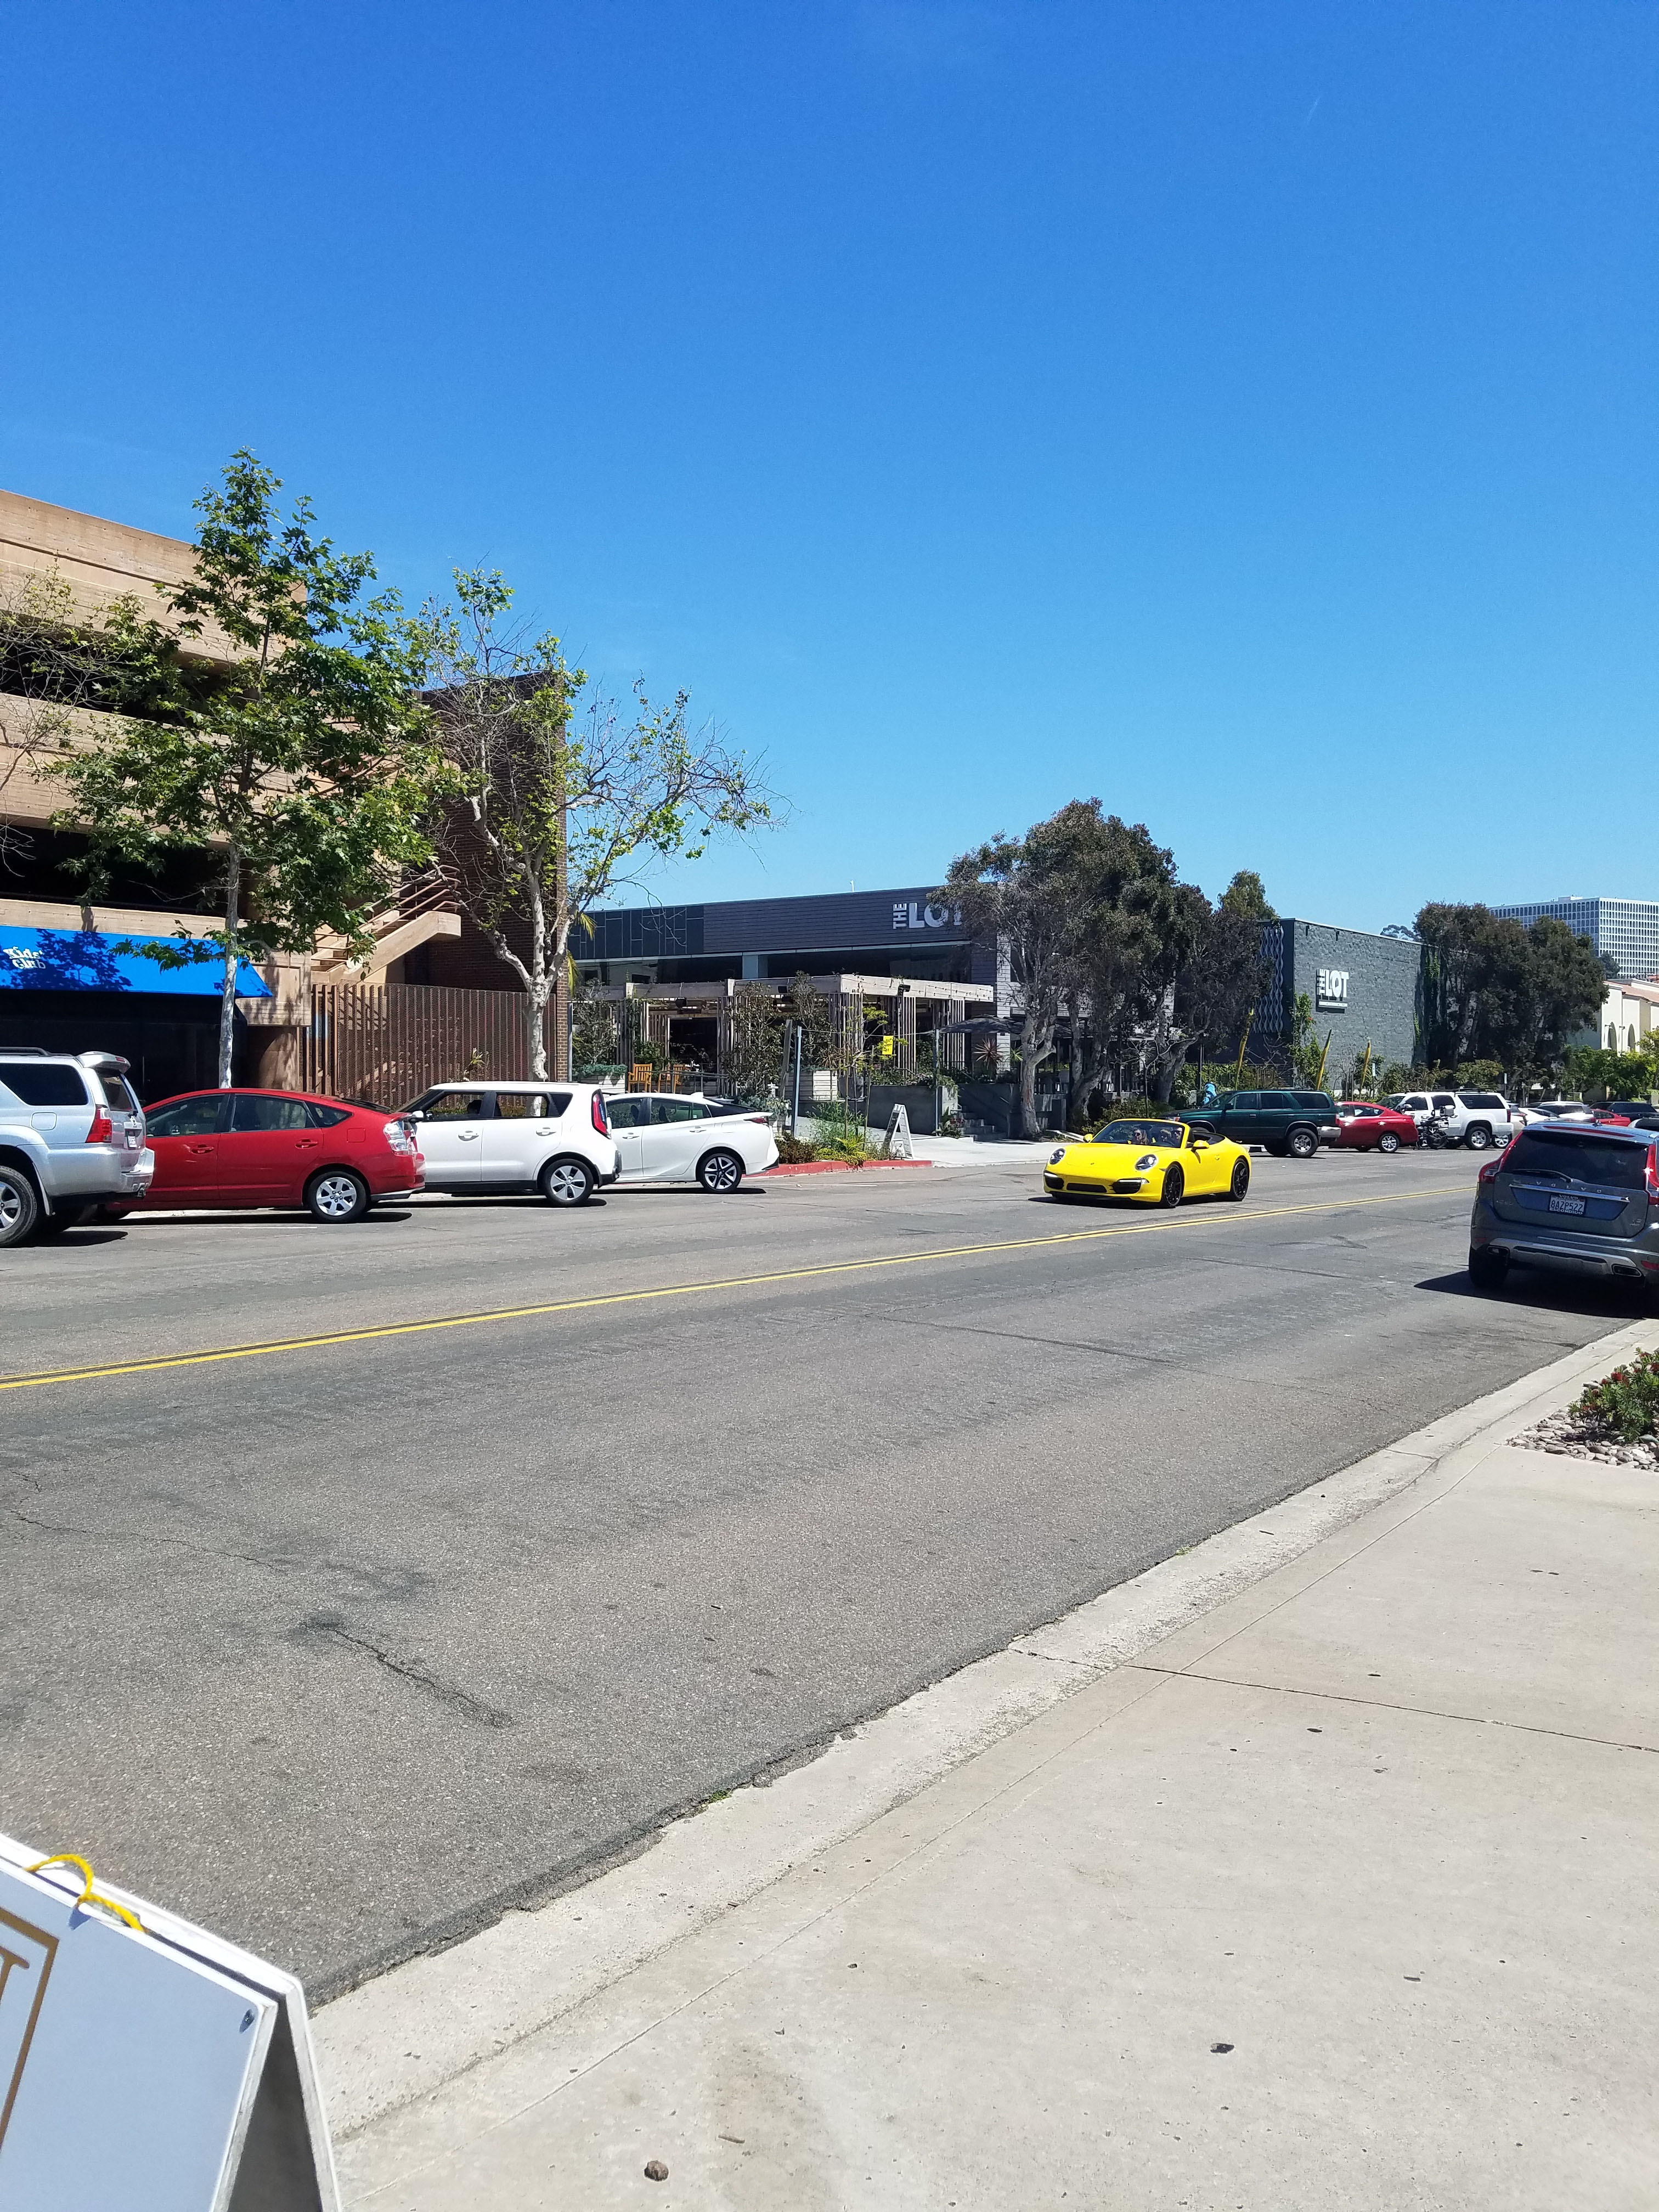 Downtown La Jolla Village